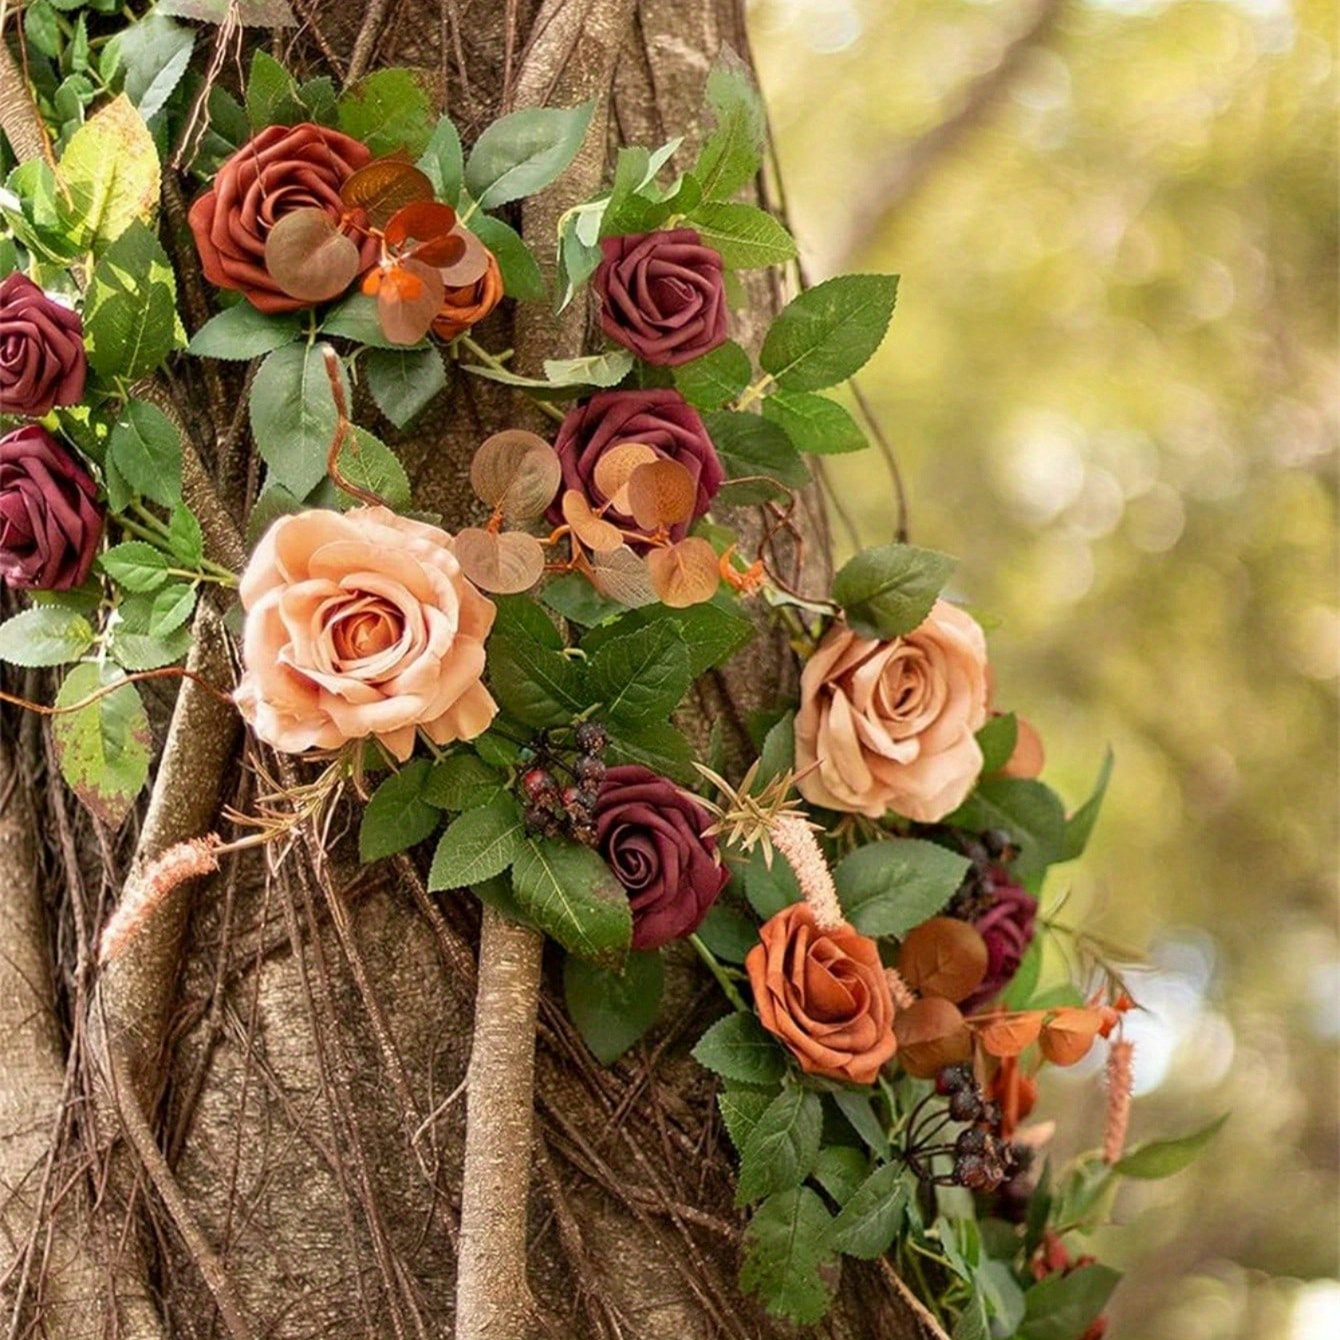 

5ft Artificial Rose Vine Floral Arrangements Wedding Ceremony Backdrop Arch Flowers Table Centerpieces Decorations